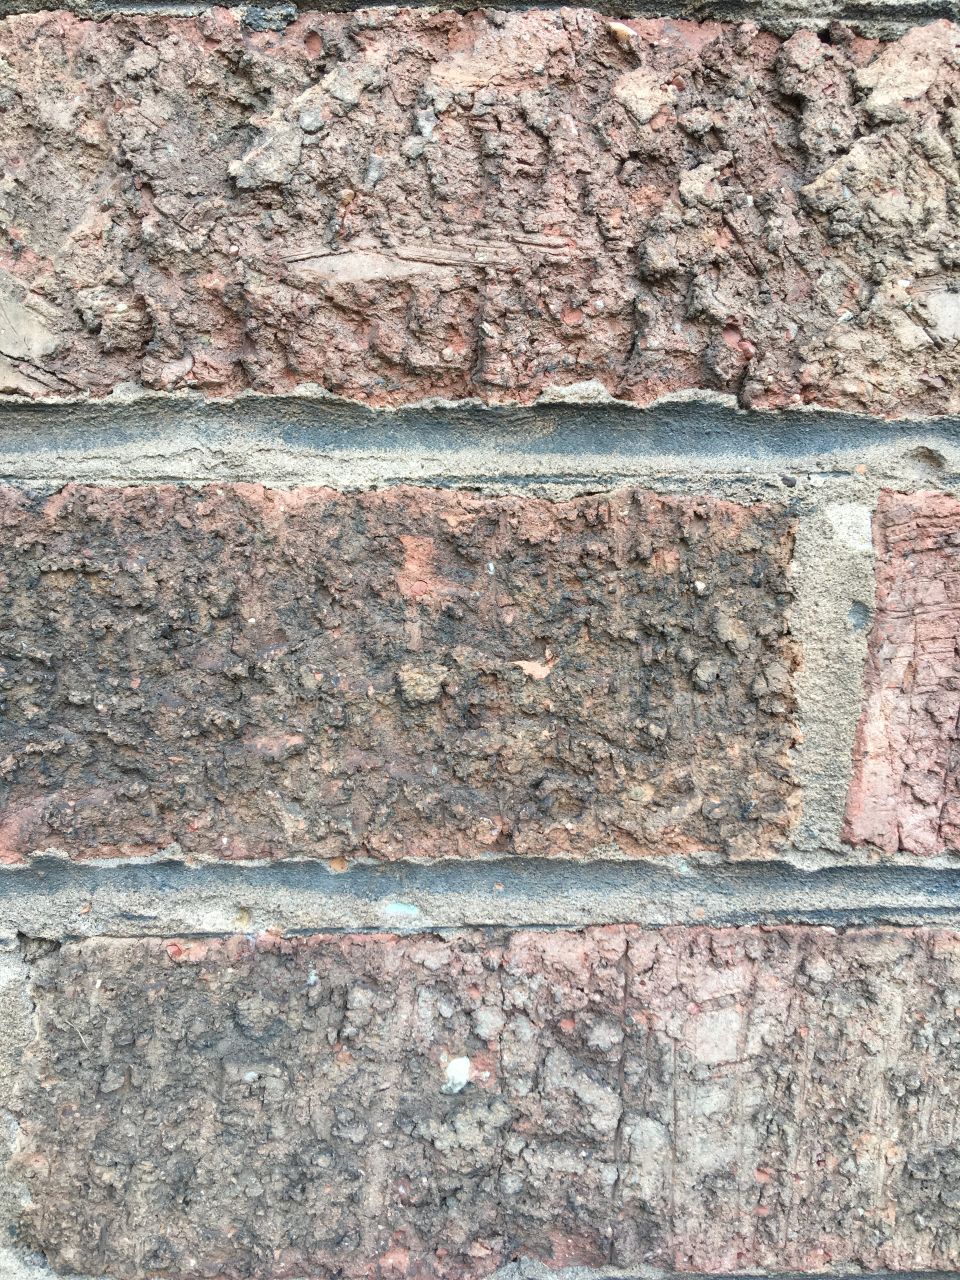 #mycityisbeautiful textured bricks 